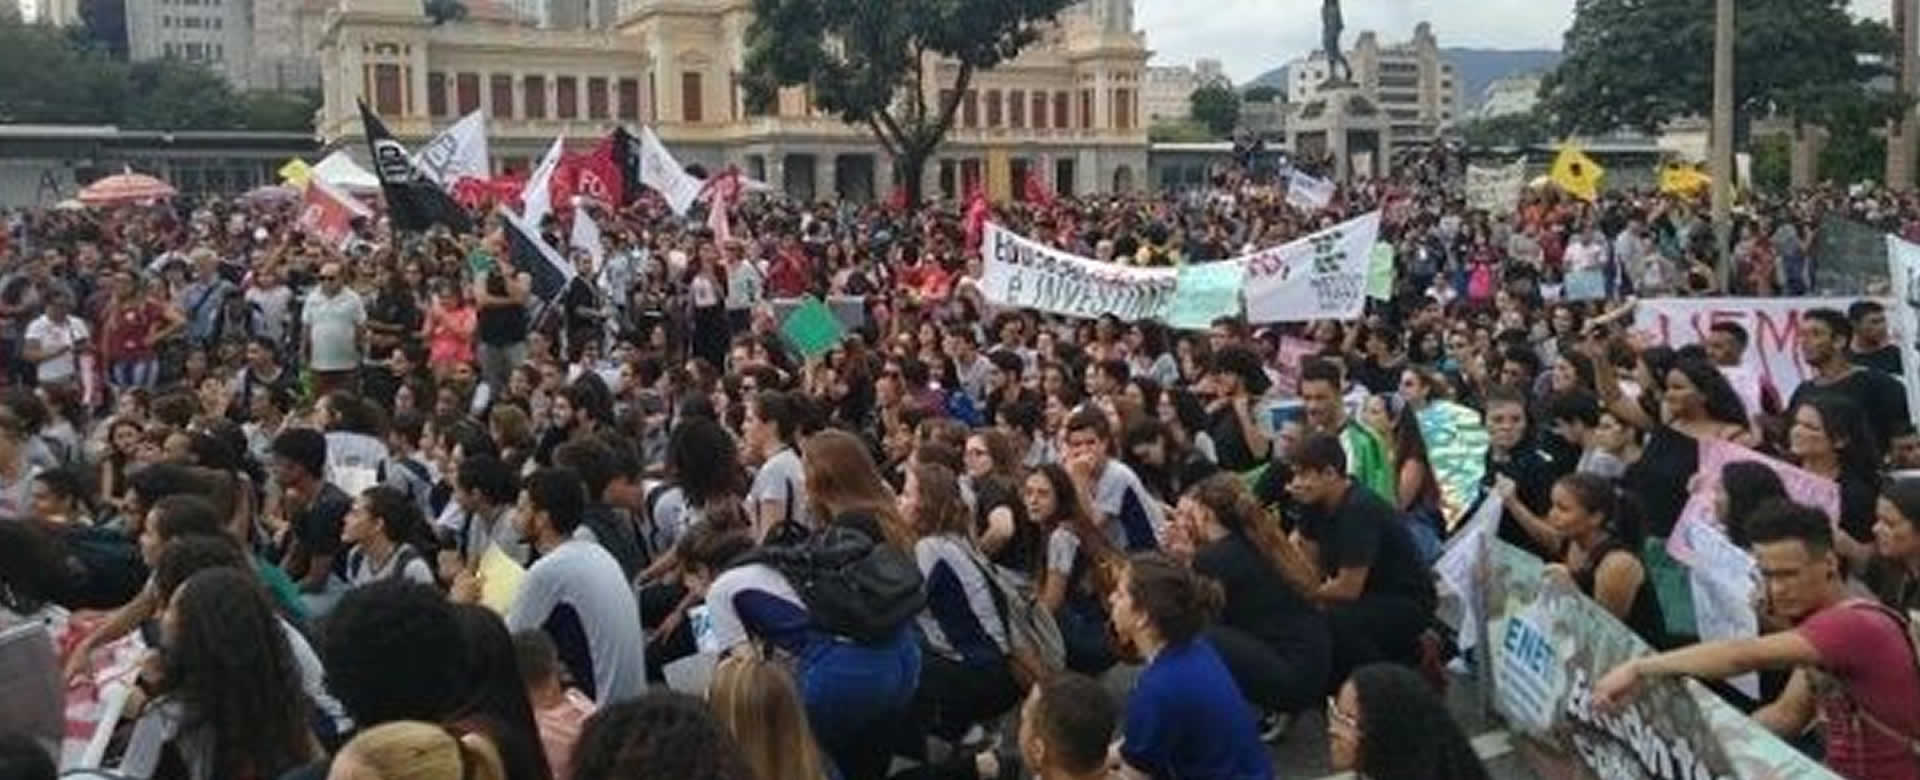 Estudiantes y docentes de Brasil realizan manifestaciones en defensa de la educación